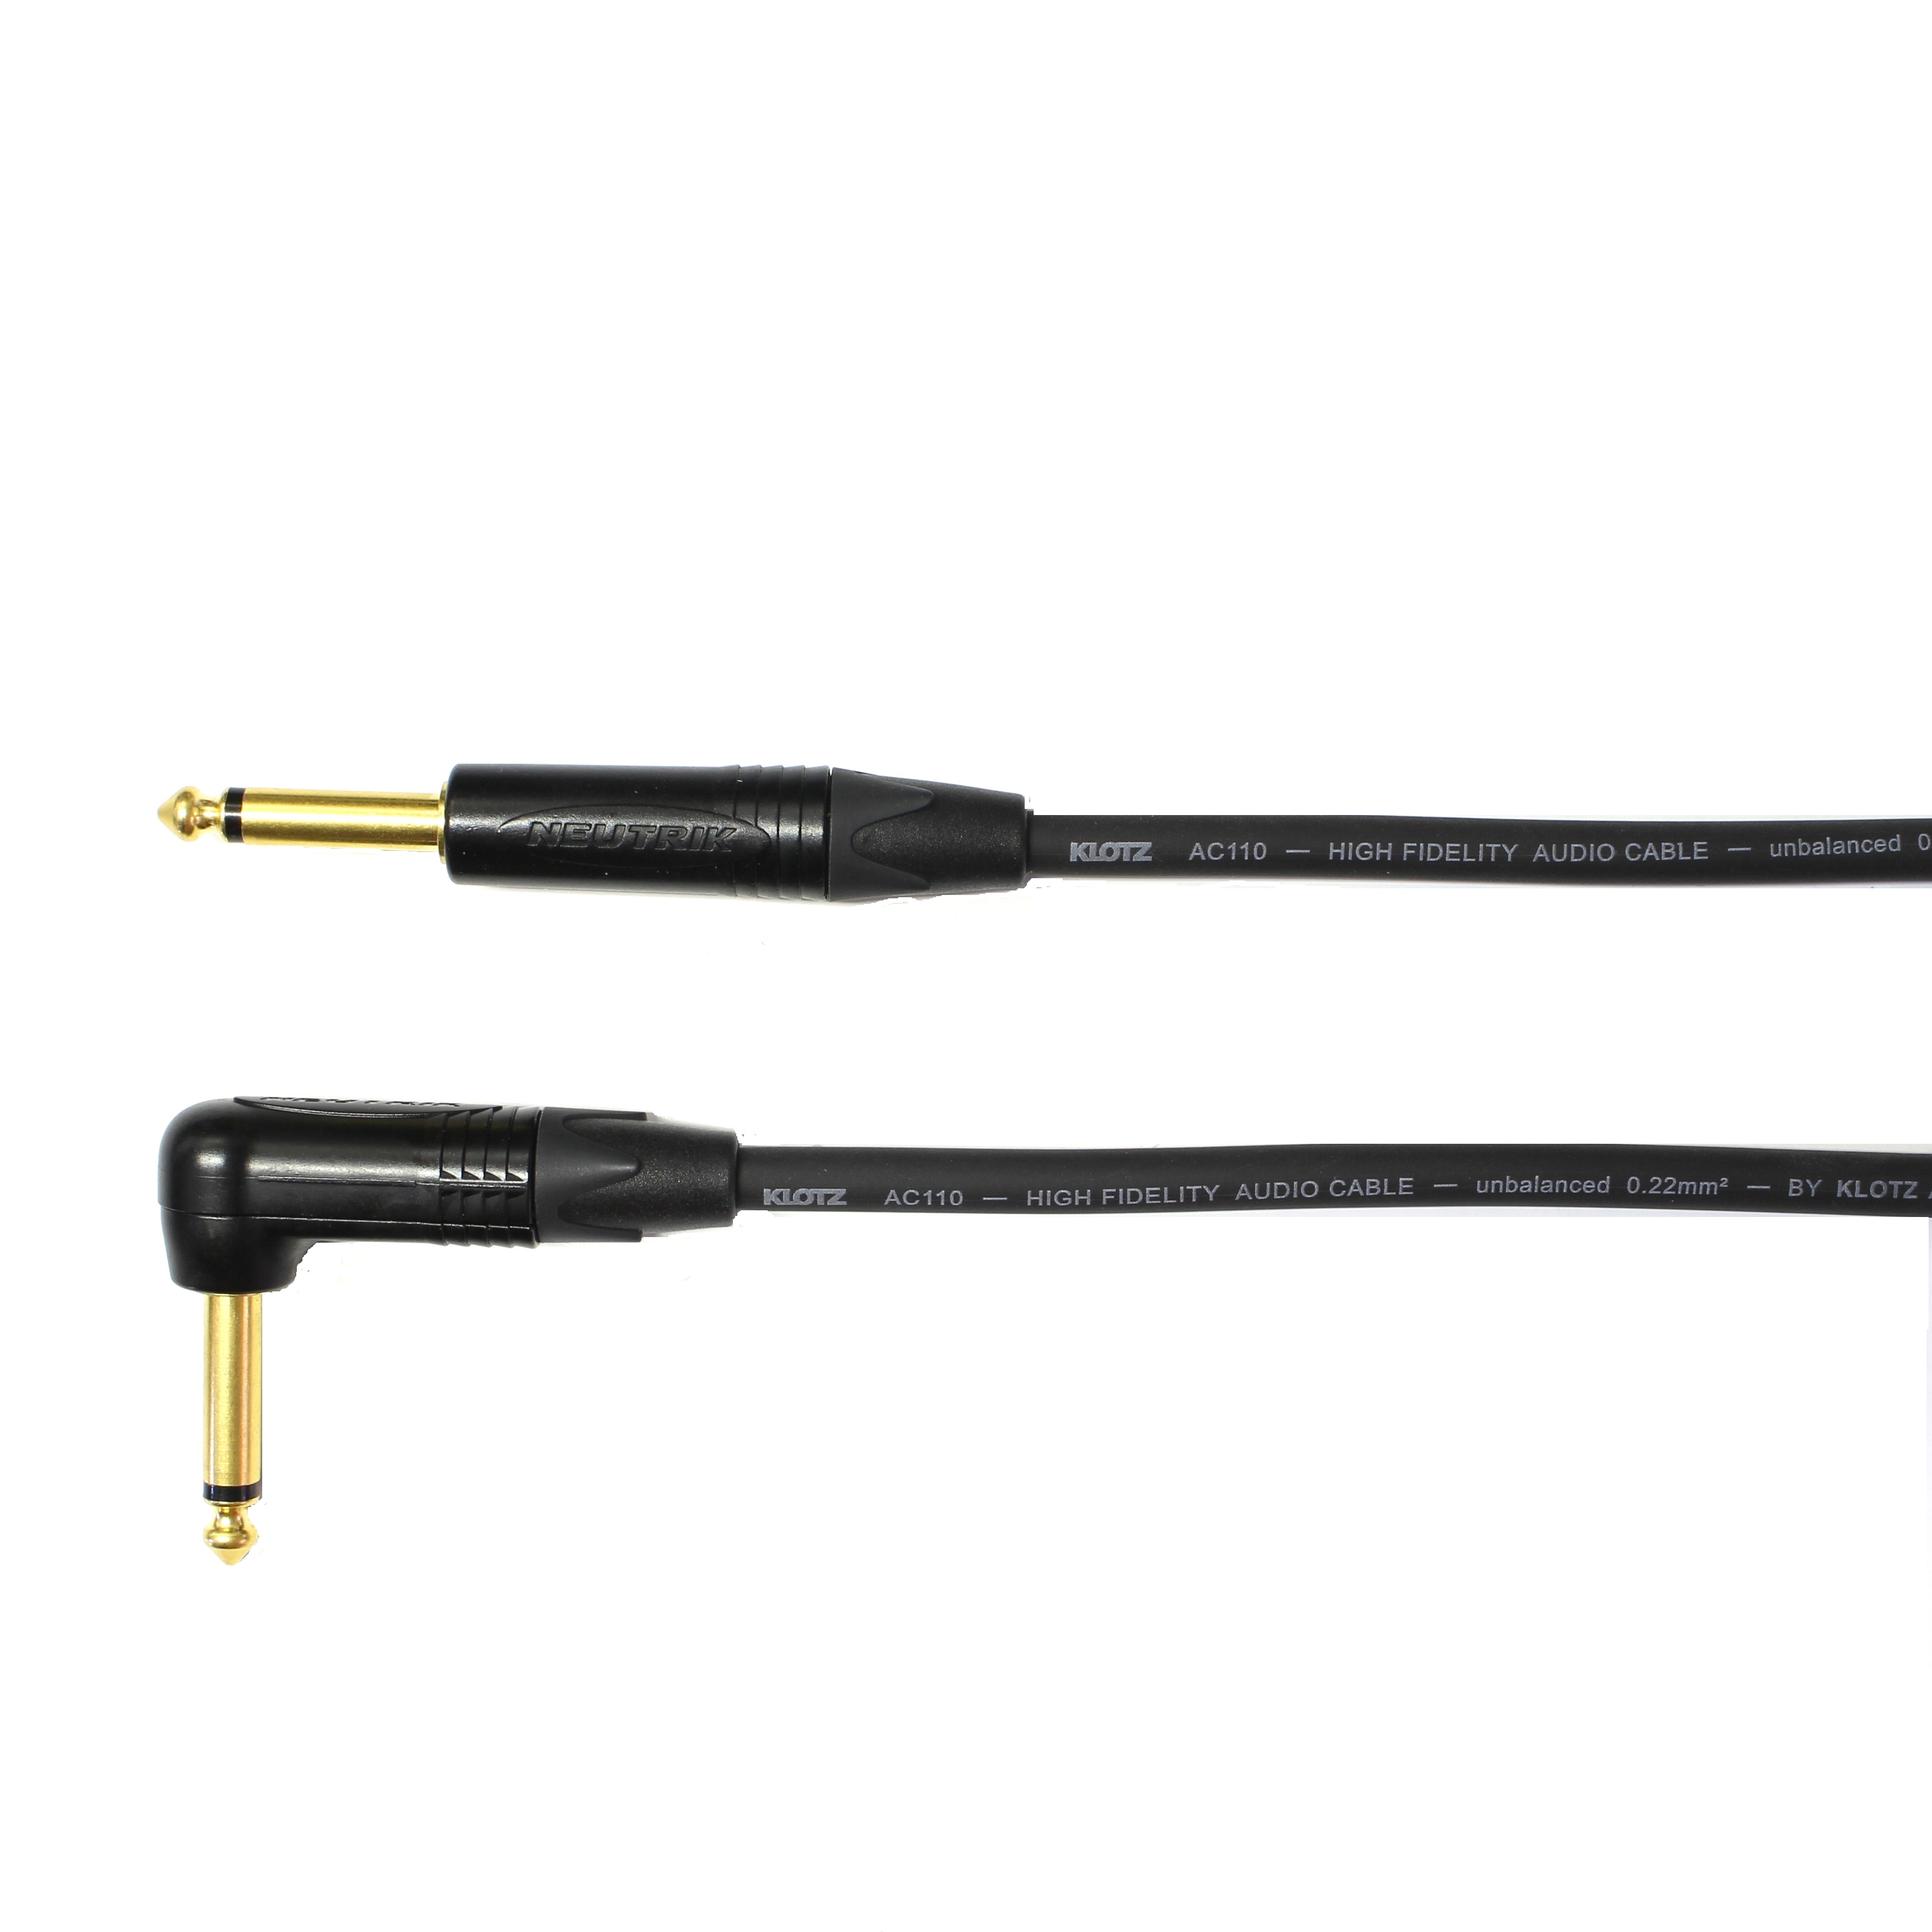 Kytarový kabel Jack 6,3 mono přímý/ Jack 6,3 mono úhlový, 8 m, AC110